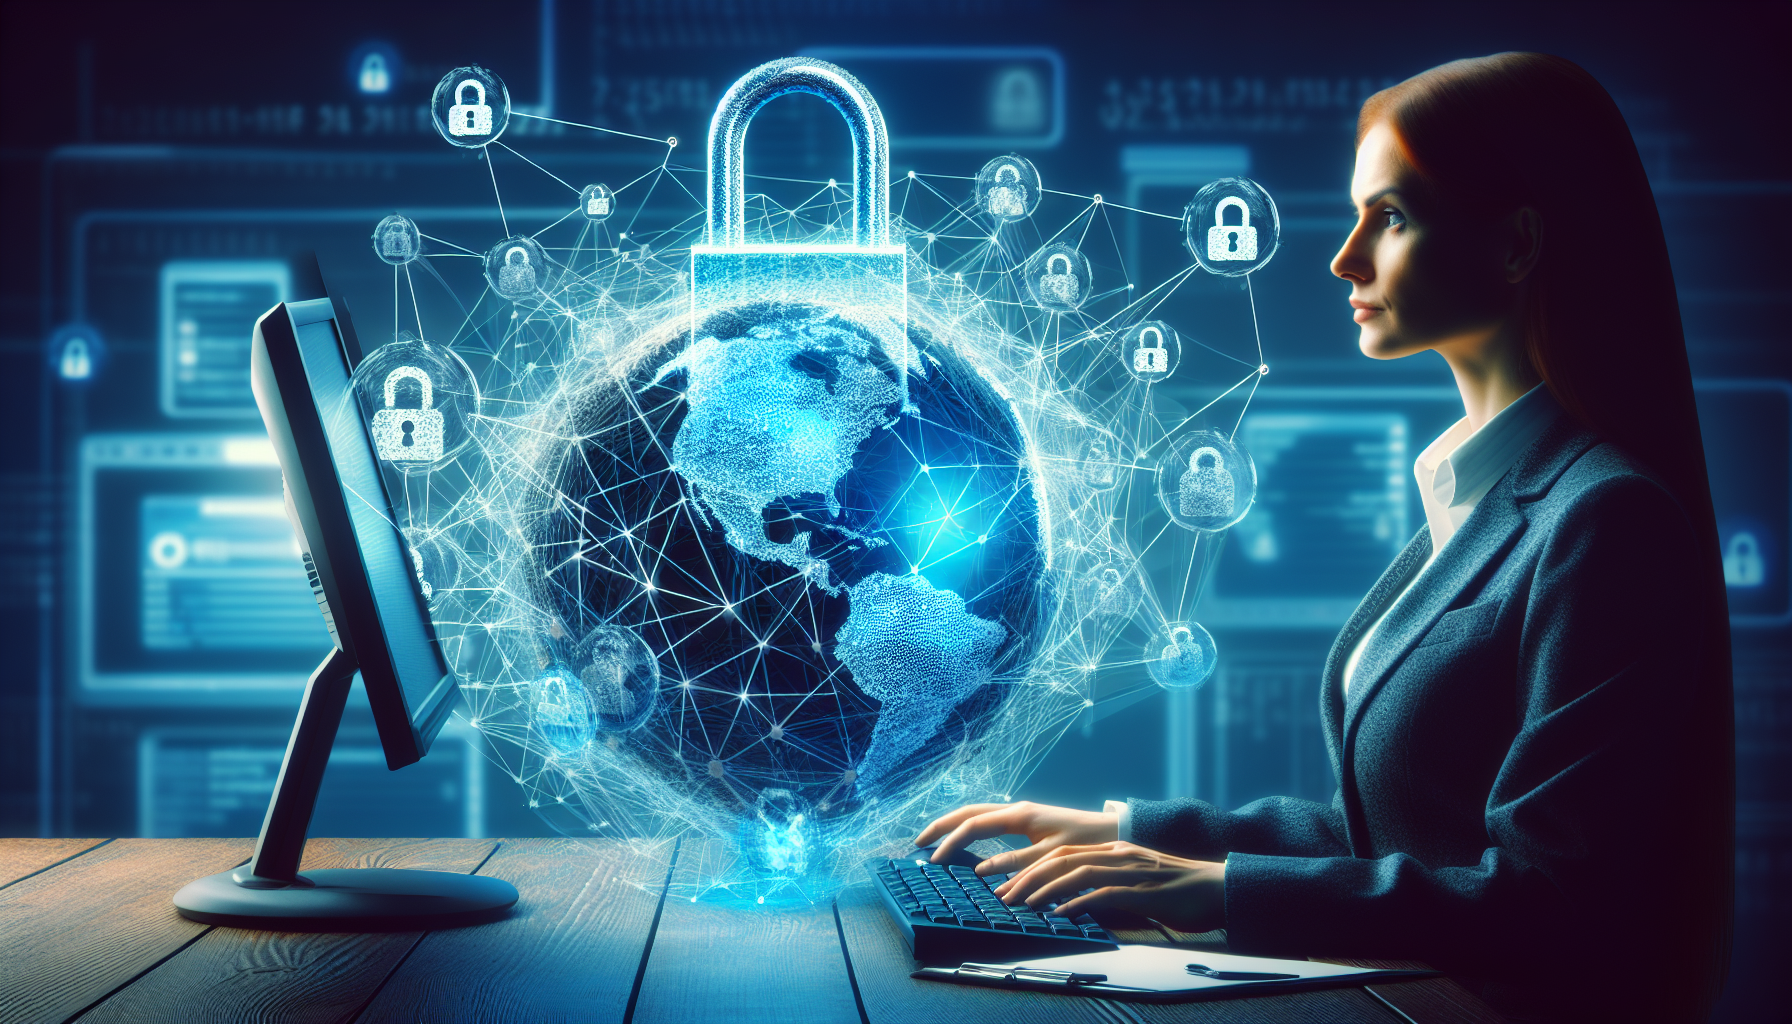 découvrez notre formation en cybersécurité pour maîtriser la sécurité des réseaux informatiques. obtenez les compétences nécessaires pour protéger les données et les systèmes contre les menaces cybernétiques.